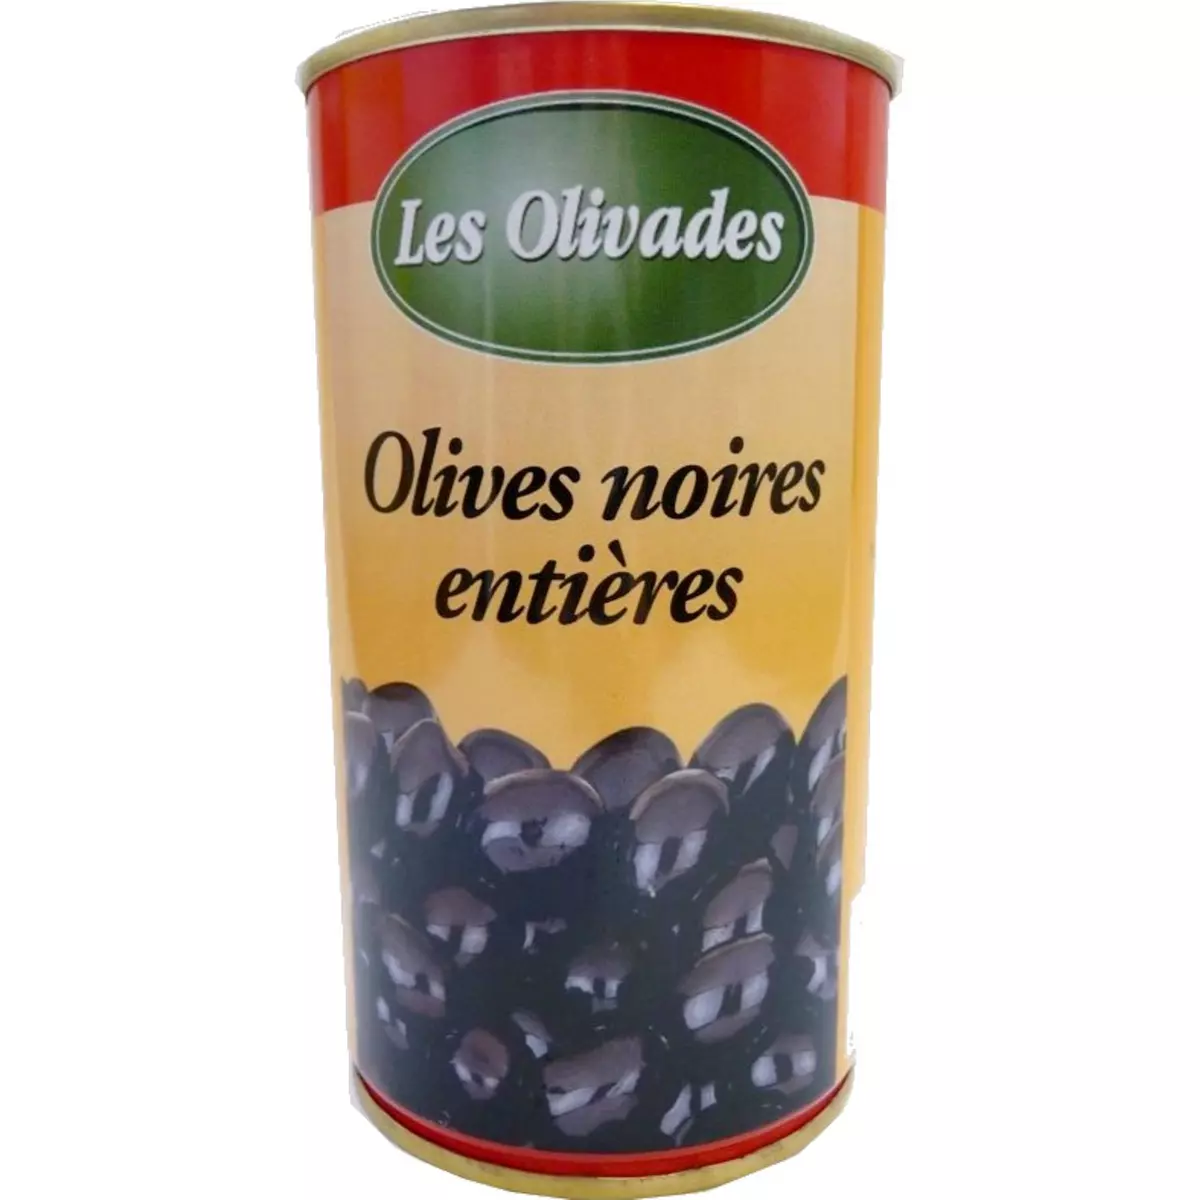 LES OLIVADES Olives noires entières 285g